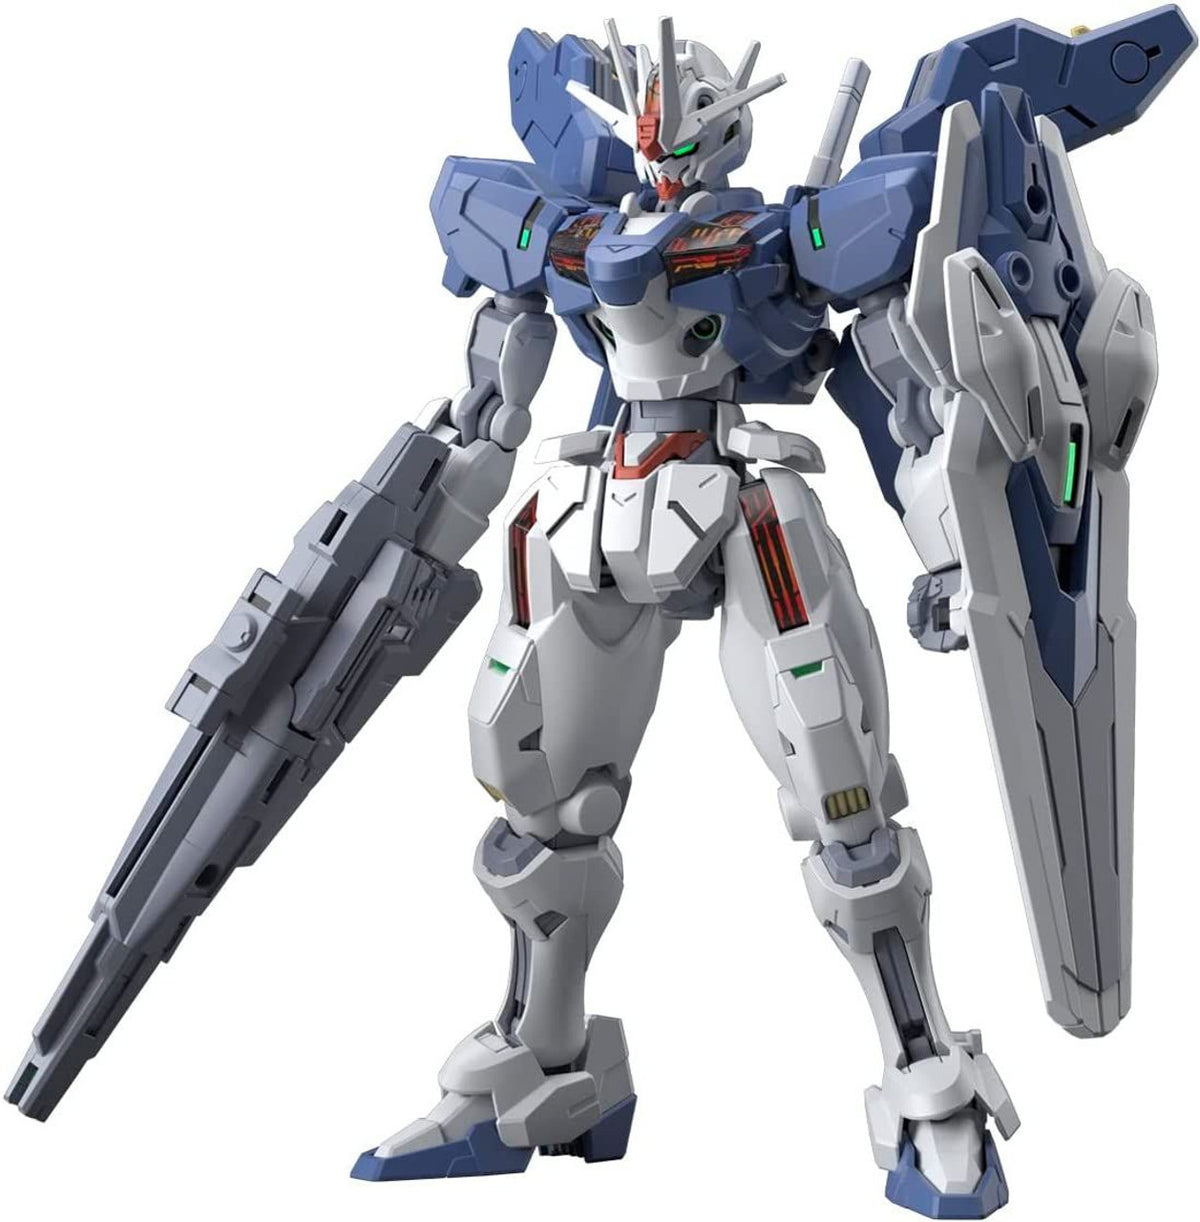 Hg 1-144 Gundam Aerial Rebuild